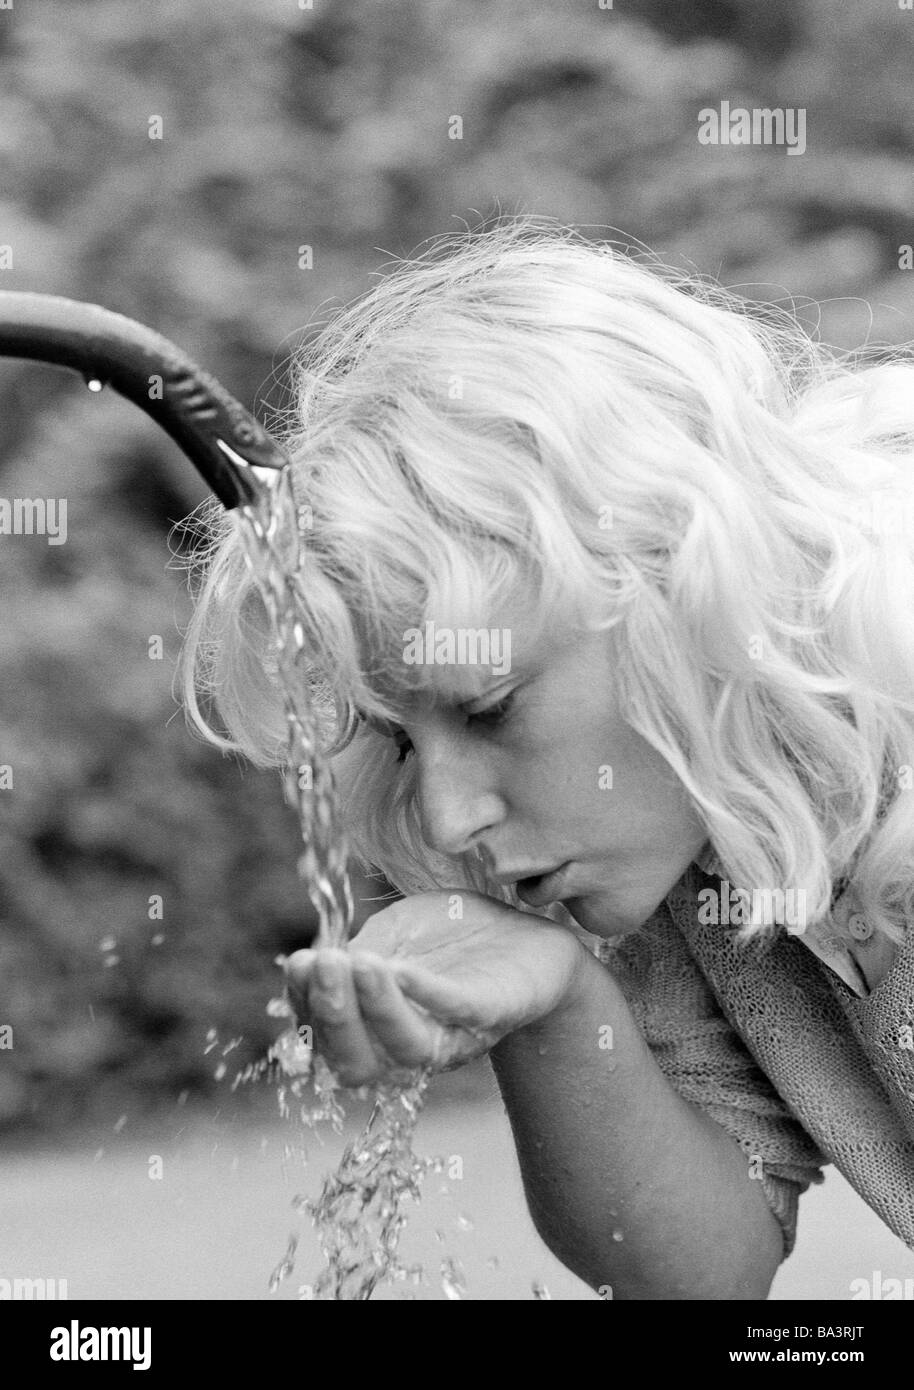 Achtziger Jahre, Menschen, junge Frau trinkt Wasser von einem, Brunnen, Abkuehlung Portraet Erfrischung, blondhaarig, et Elisabeth Banque D'Images